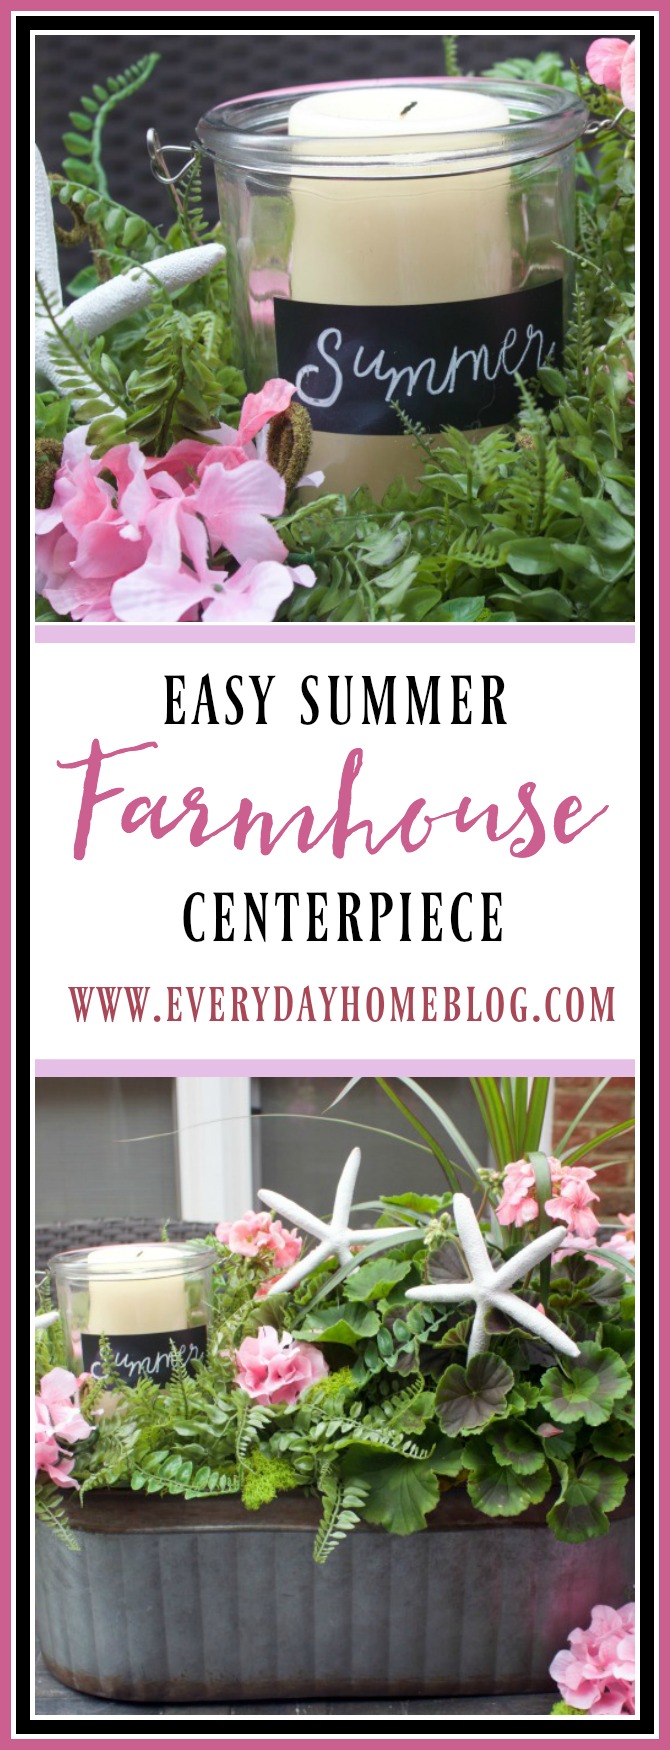 How to Make an Easy Summer Farmhouse Centerpiece || The Everyday Home || www.everydayhomeblog.com